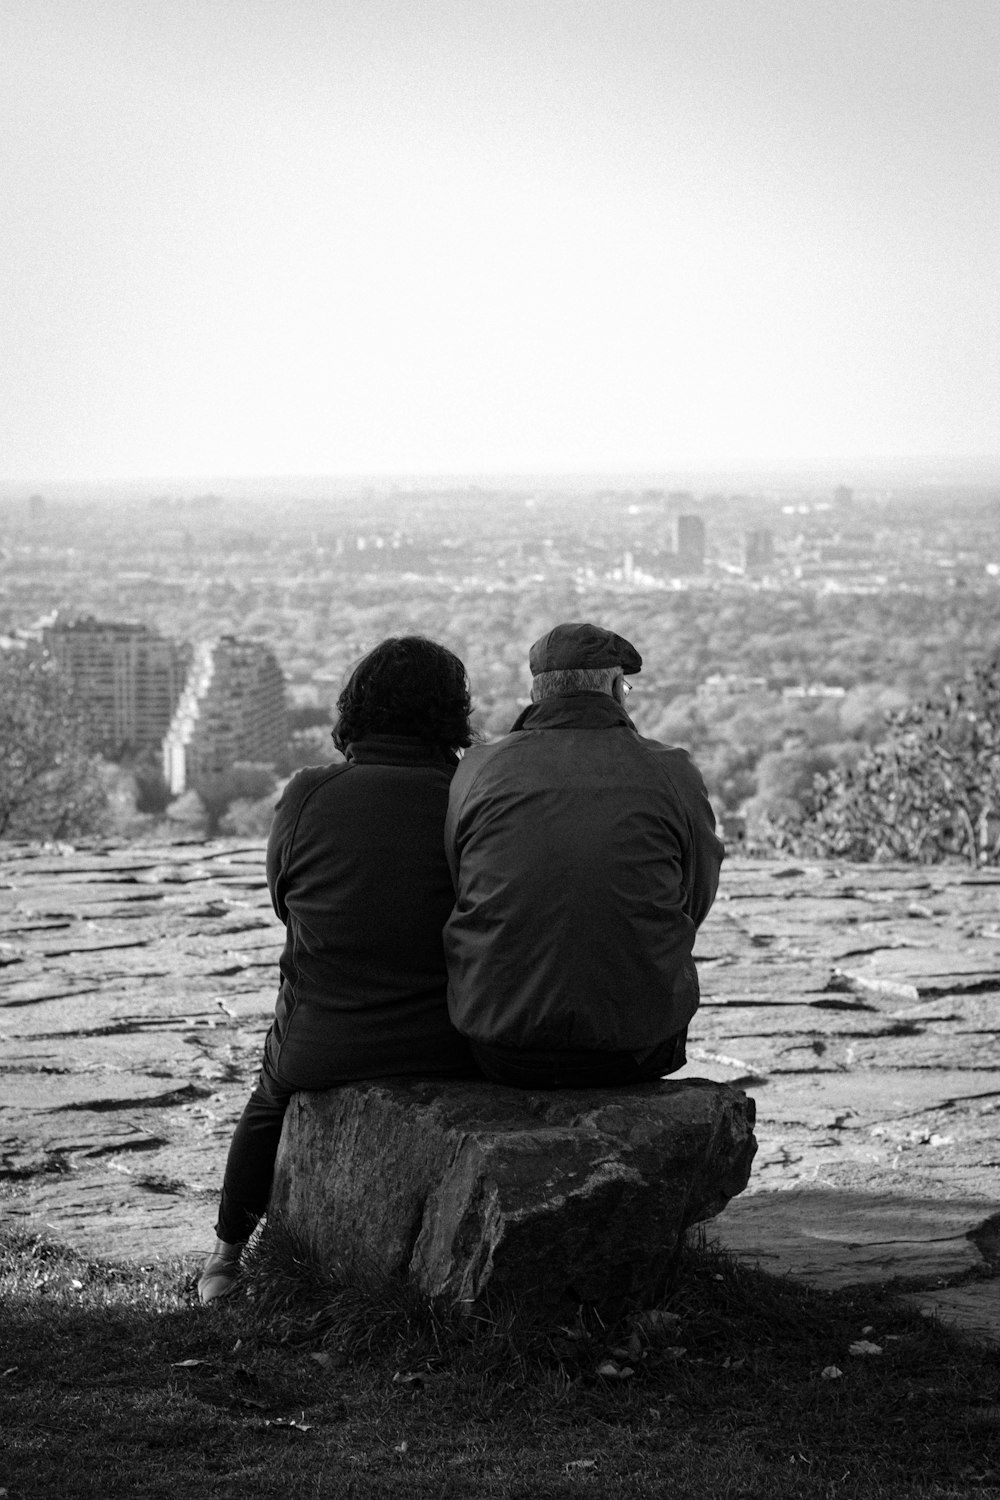 바위 위에 앉아있는 두 사람